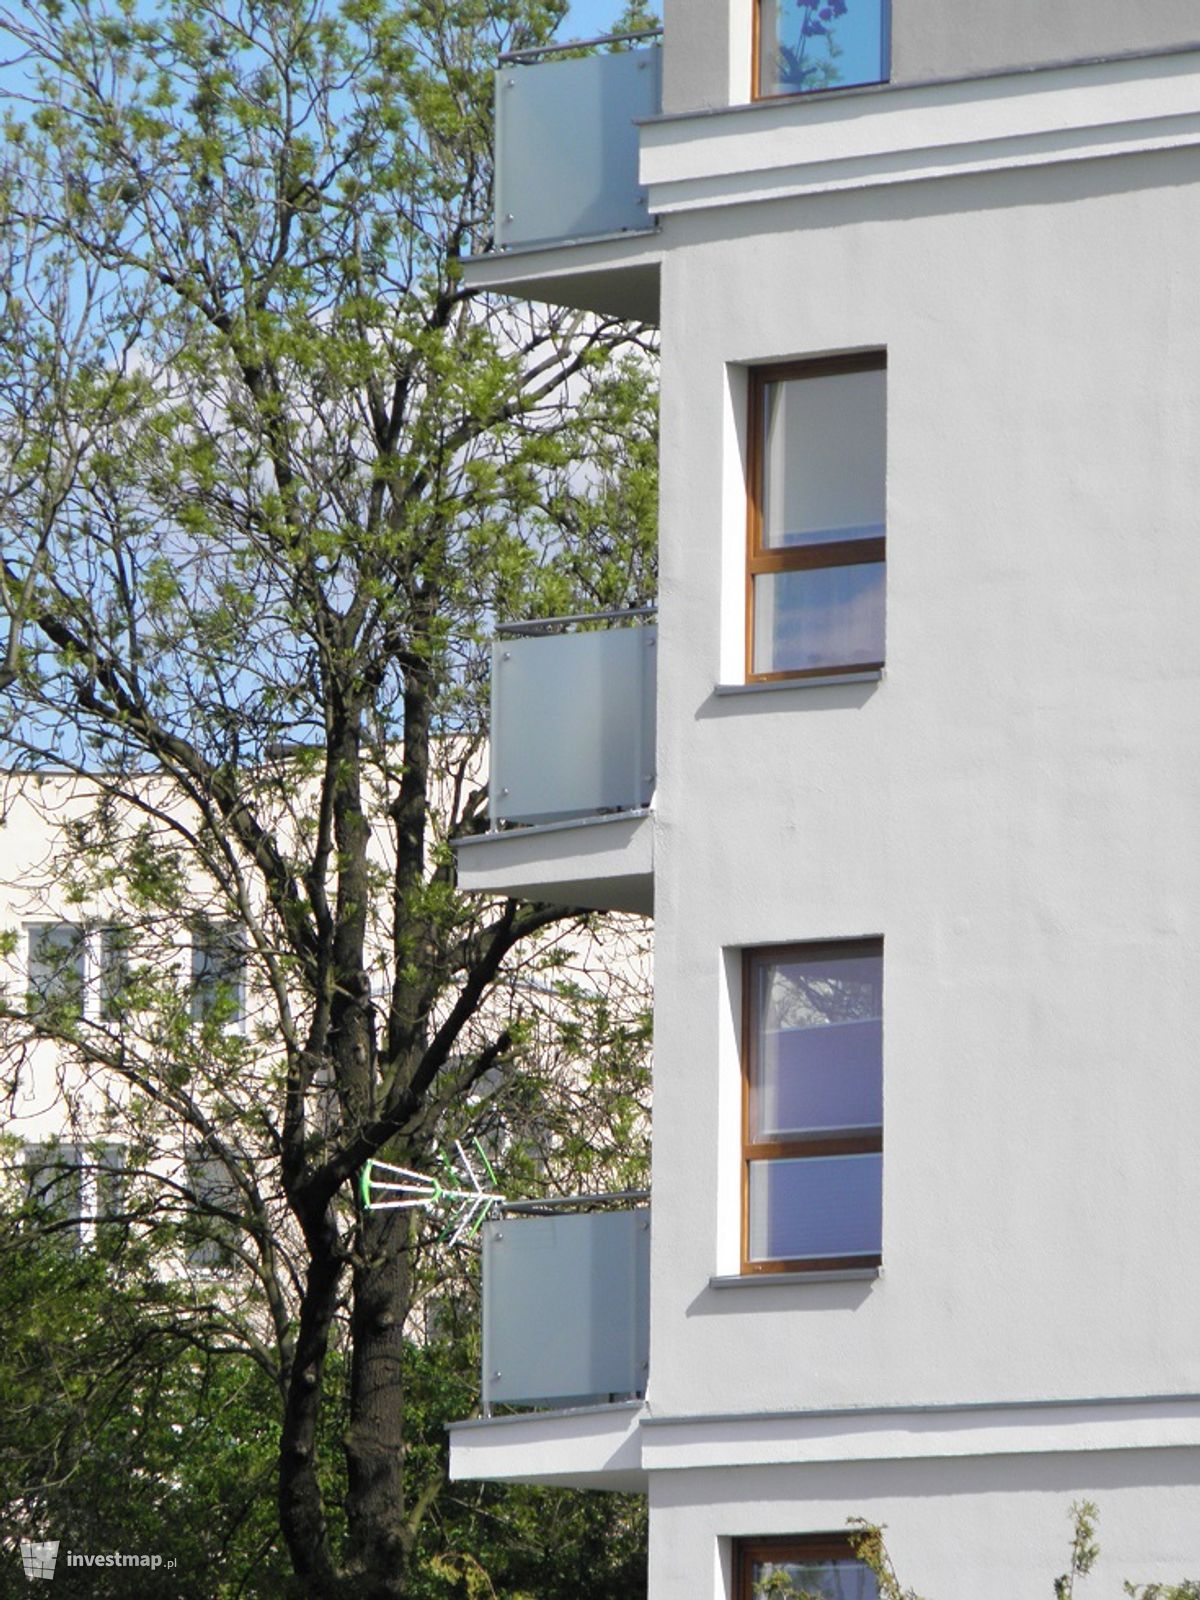 Zdjęcie [Poznań] RBW, budynek wielorodzinny "Inflancka 63" fot. PieEetrek 